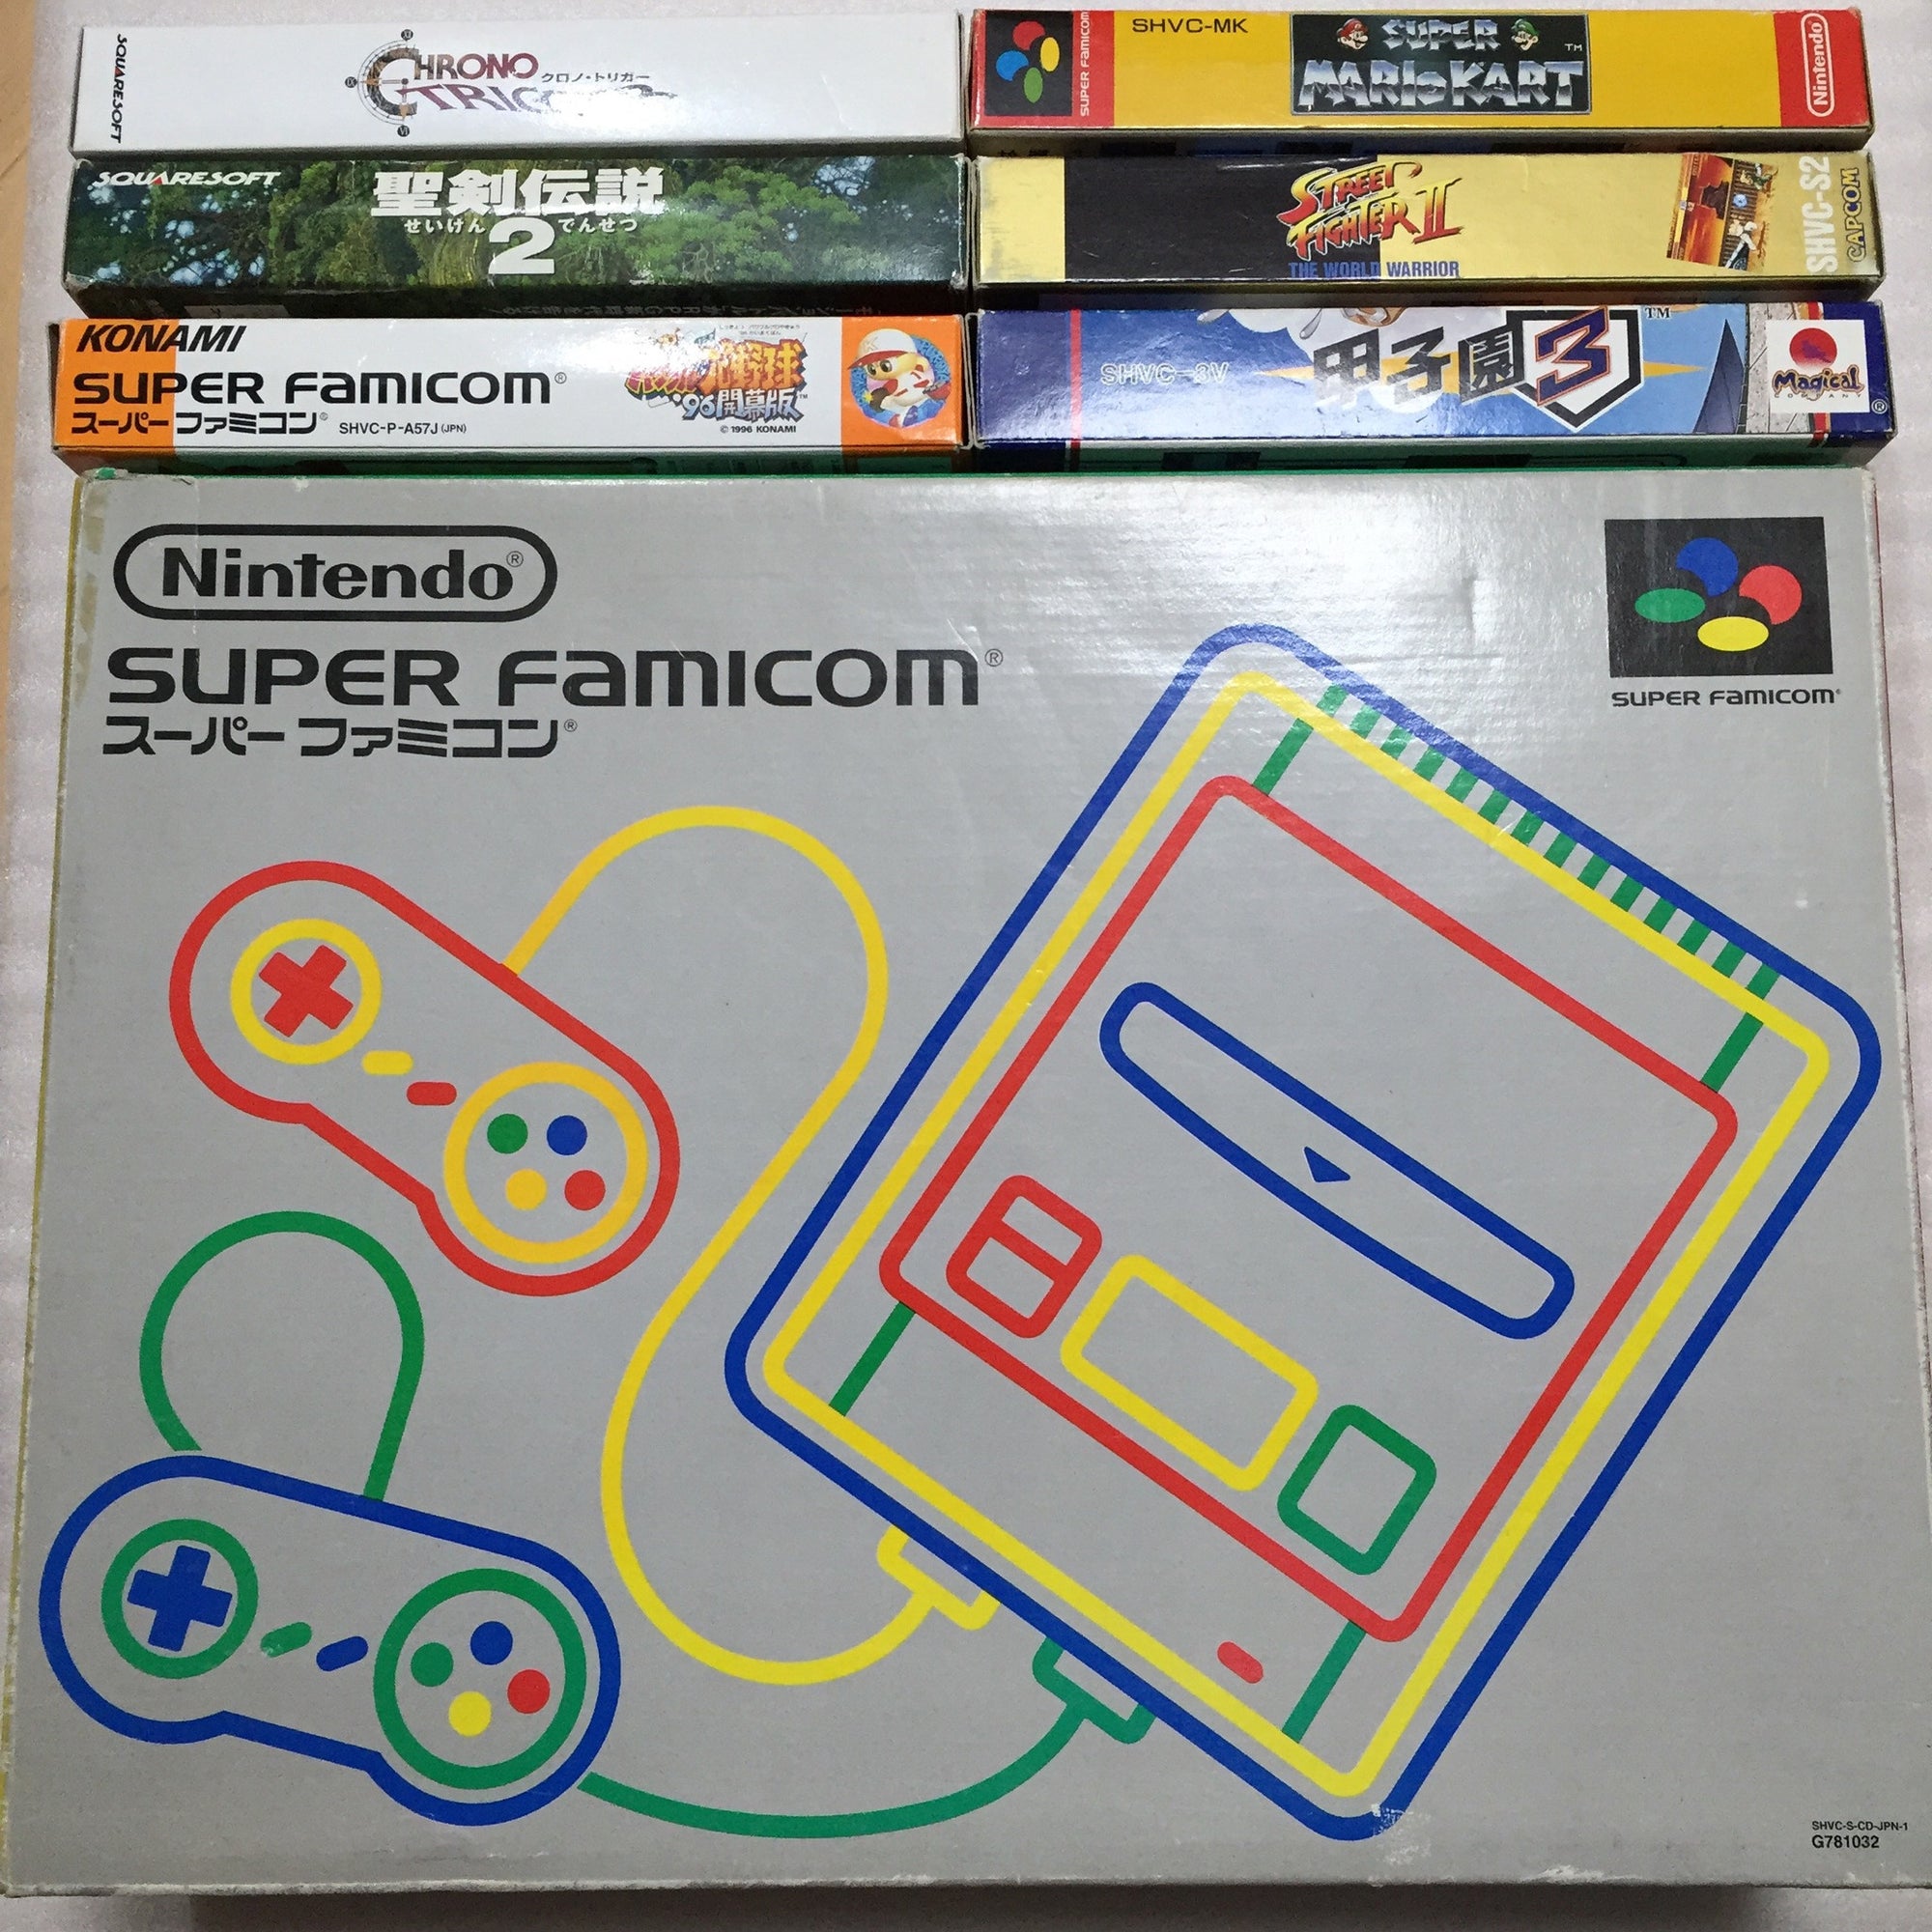 1 CHIP Super Famicom - set with 6 games - RetroAsia - 1